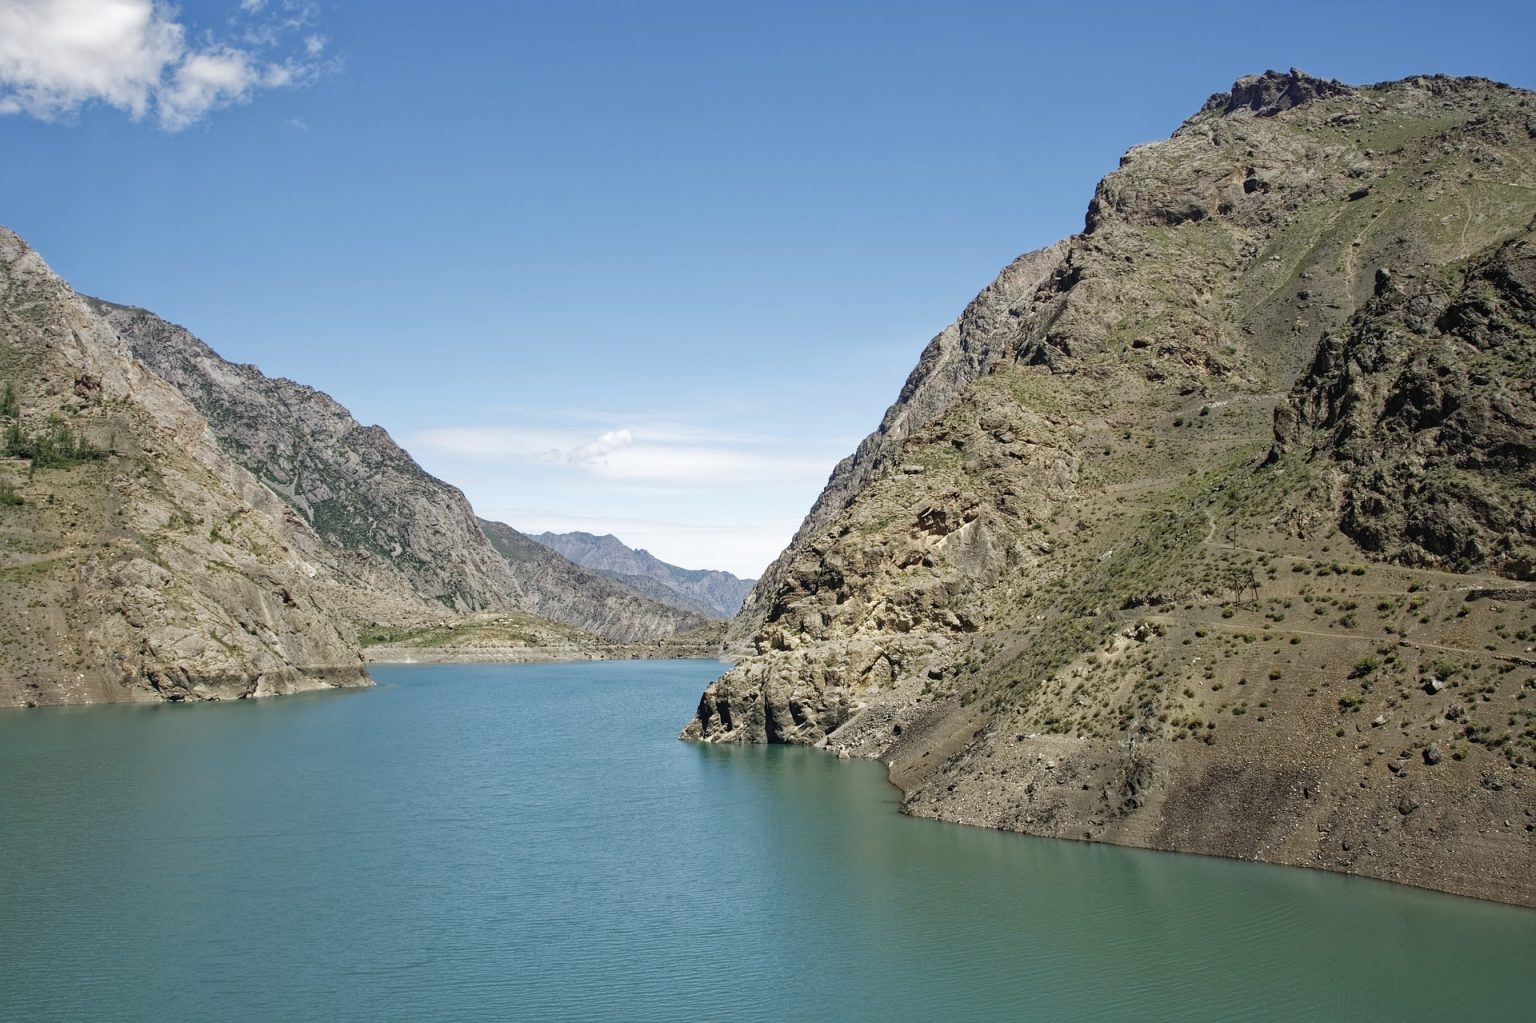 Семь озер вода. 7 Озёр Таджикистан. Горы и вода Таджикистана. Таджикистан 7 озер фото. Озеро Сарез в Таджикистане фото.